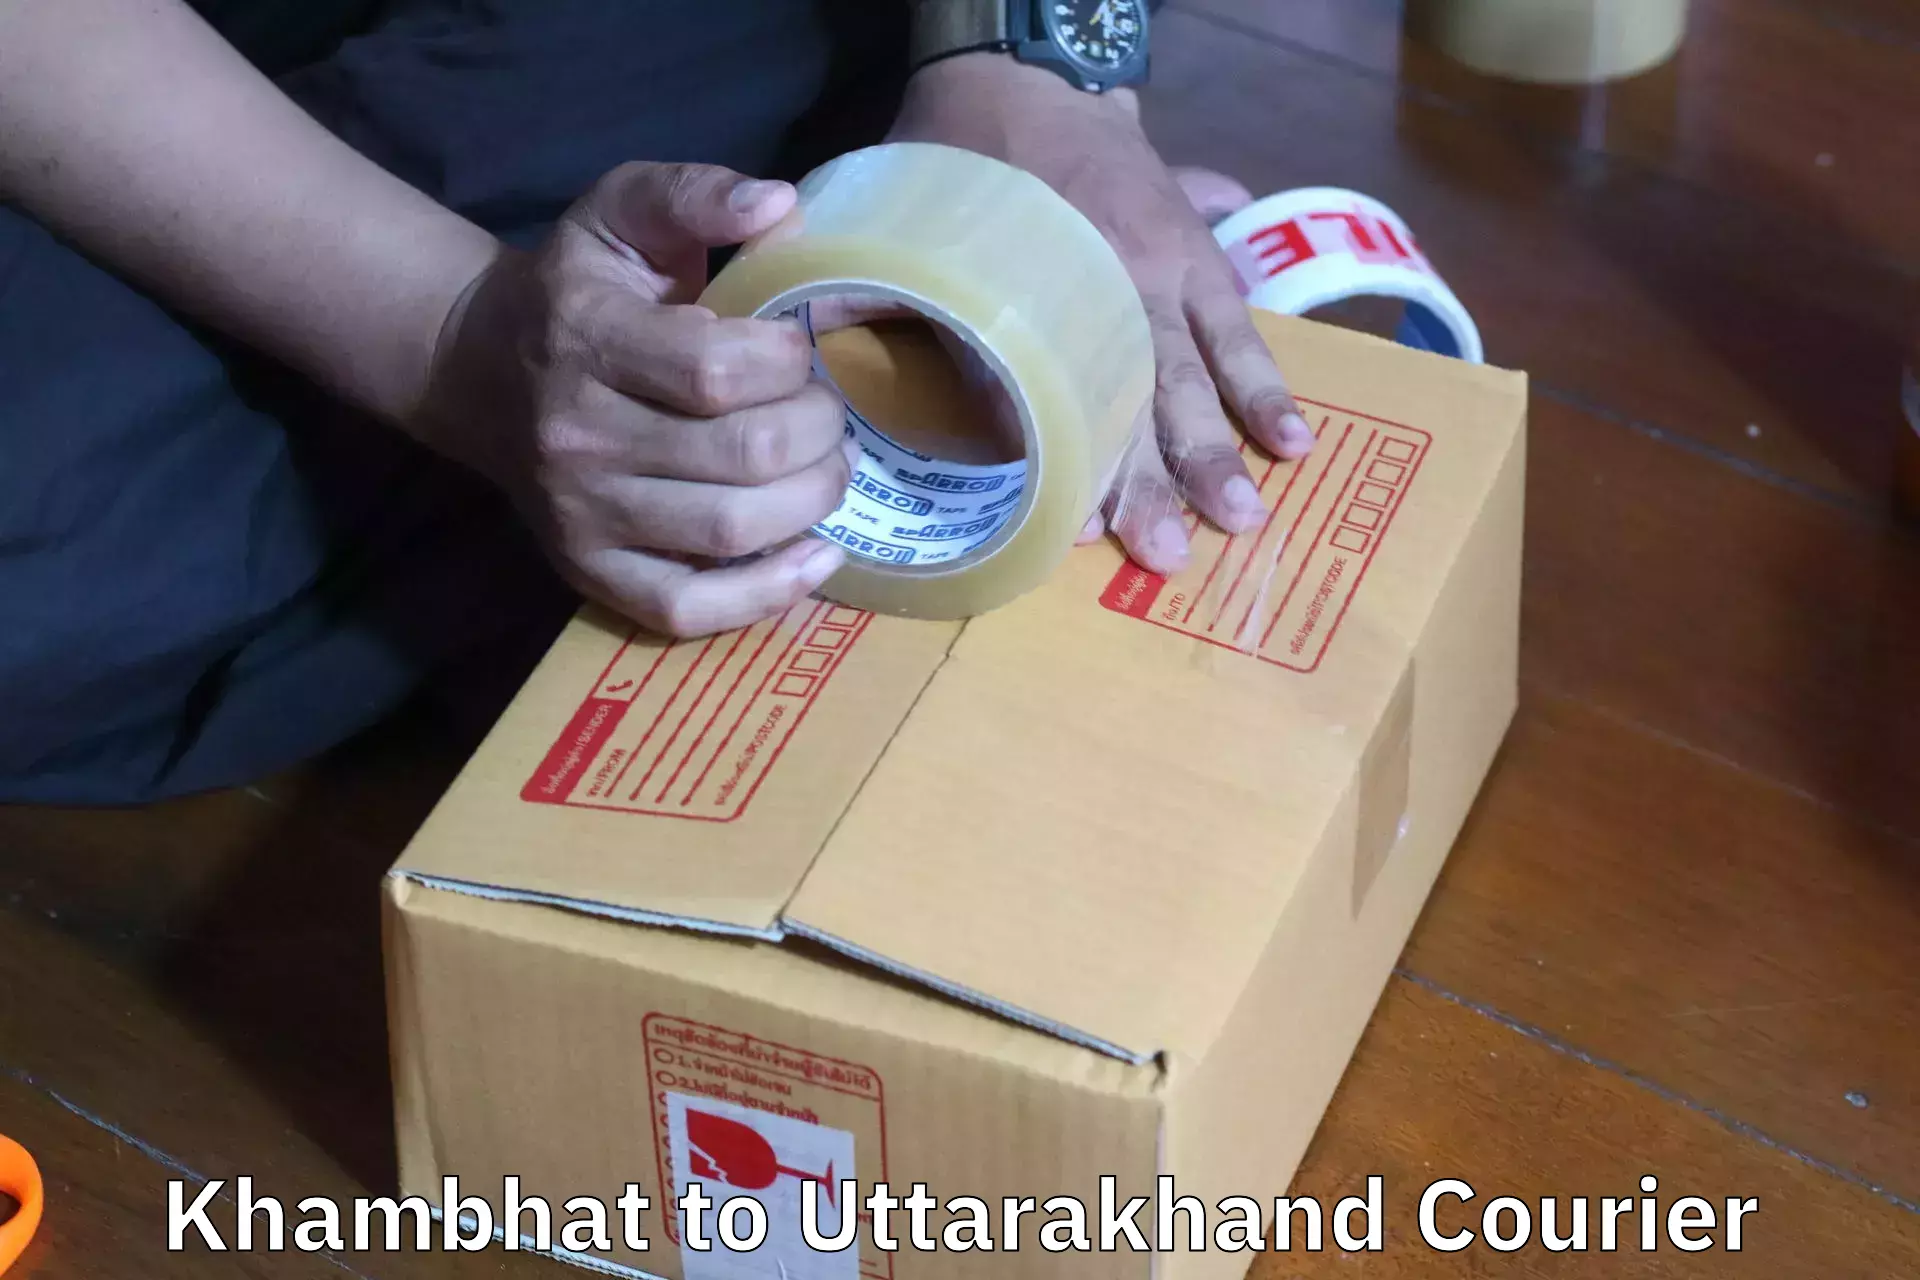 Furniture moving experts Khambhat to Uttarakhand